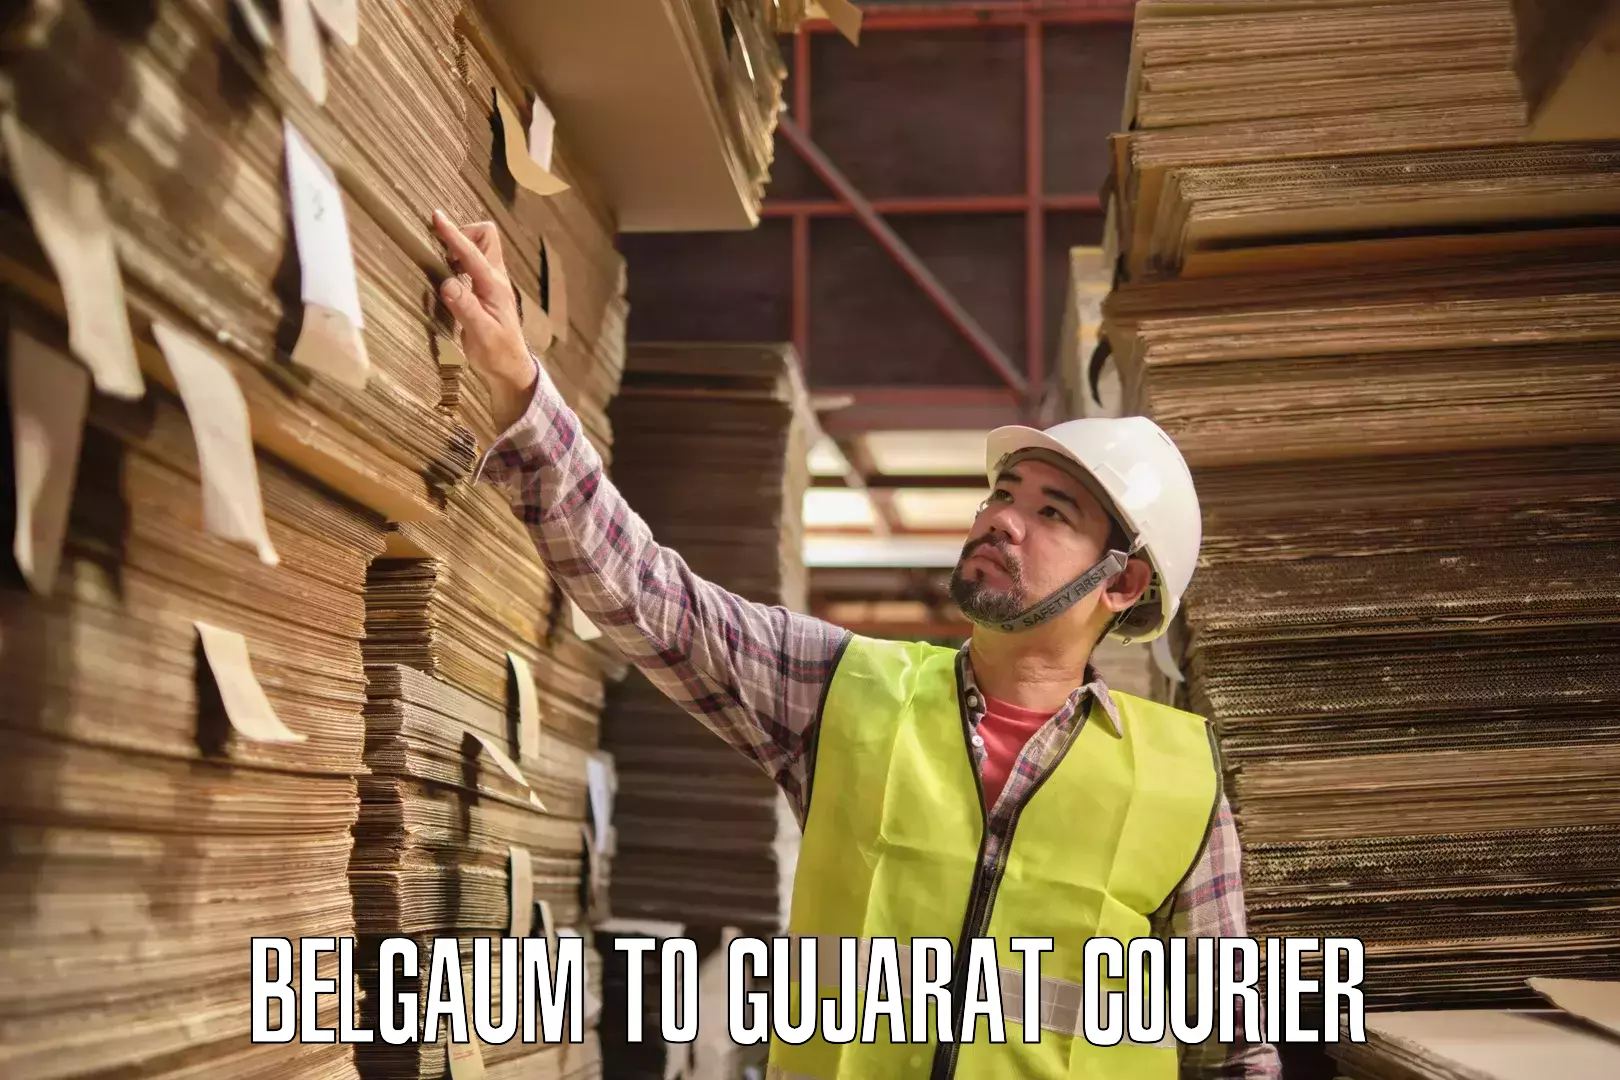 Return courier service Belgaum to Vijapur